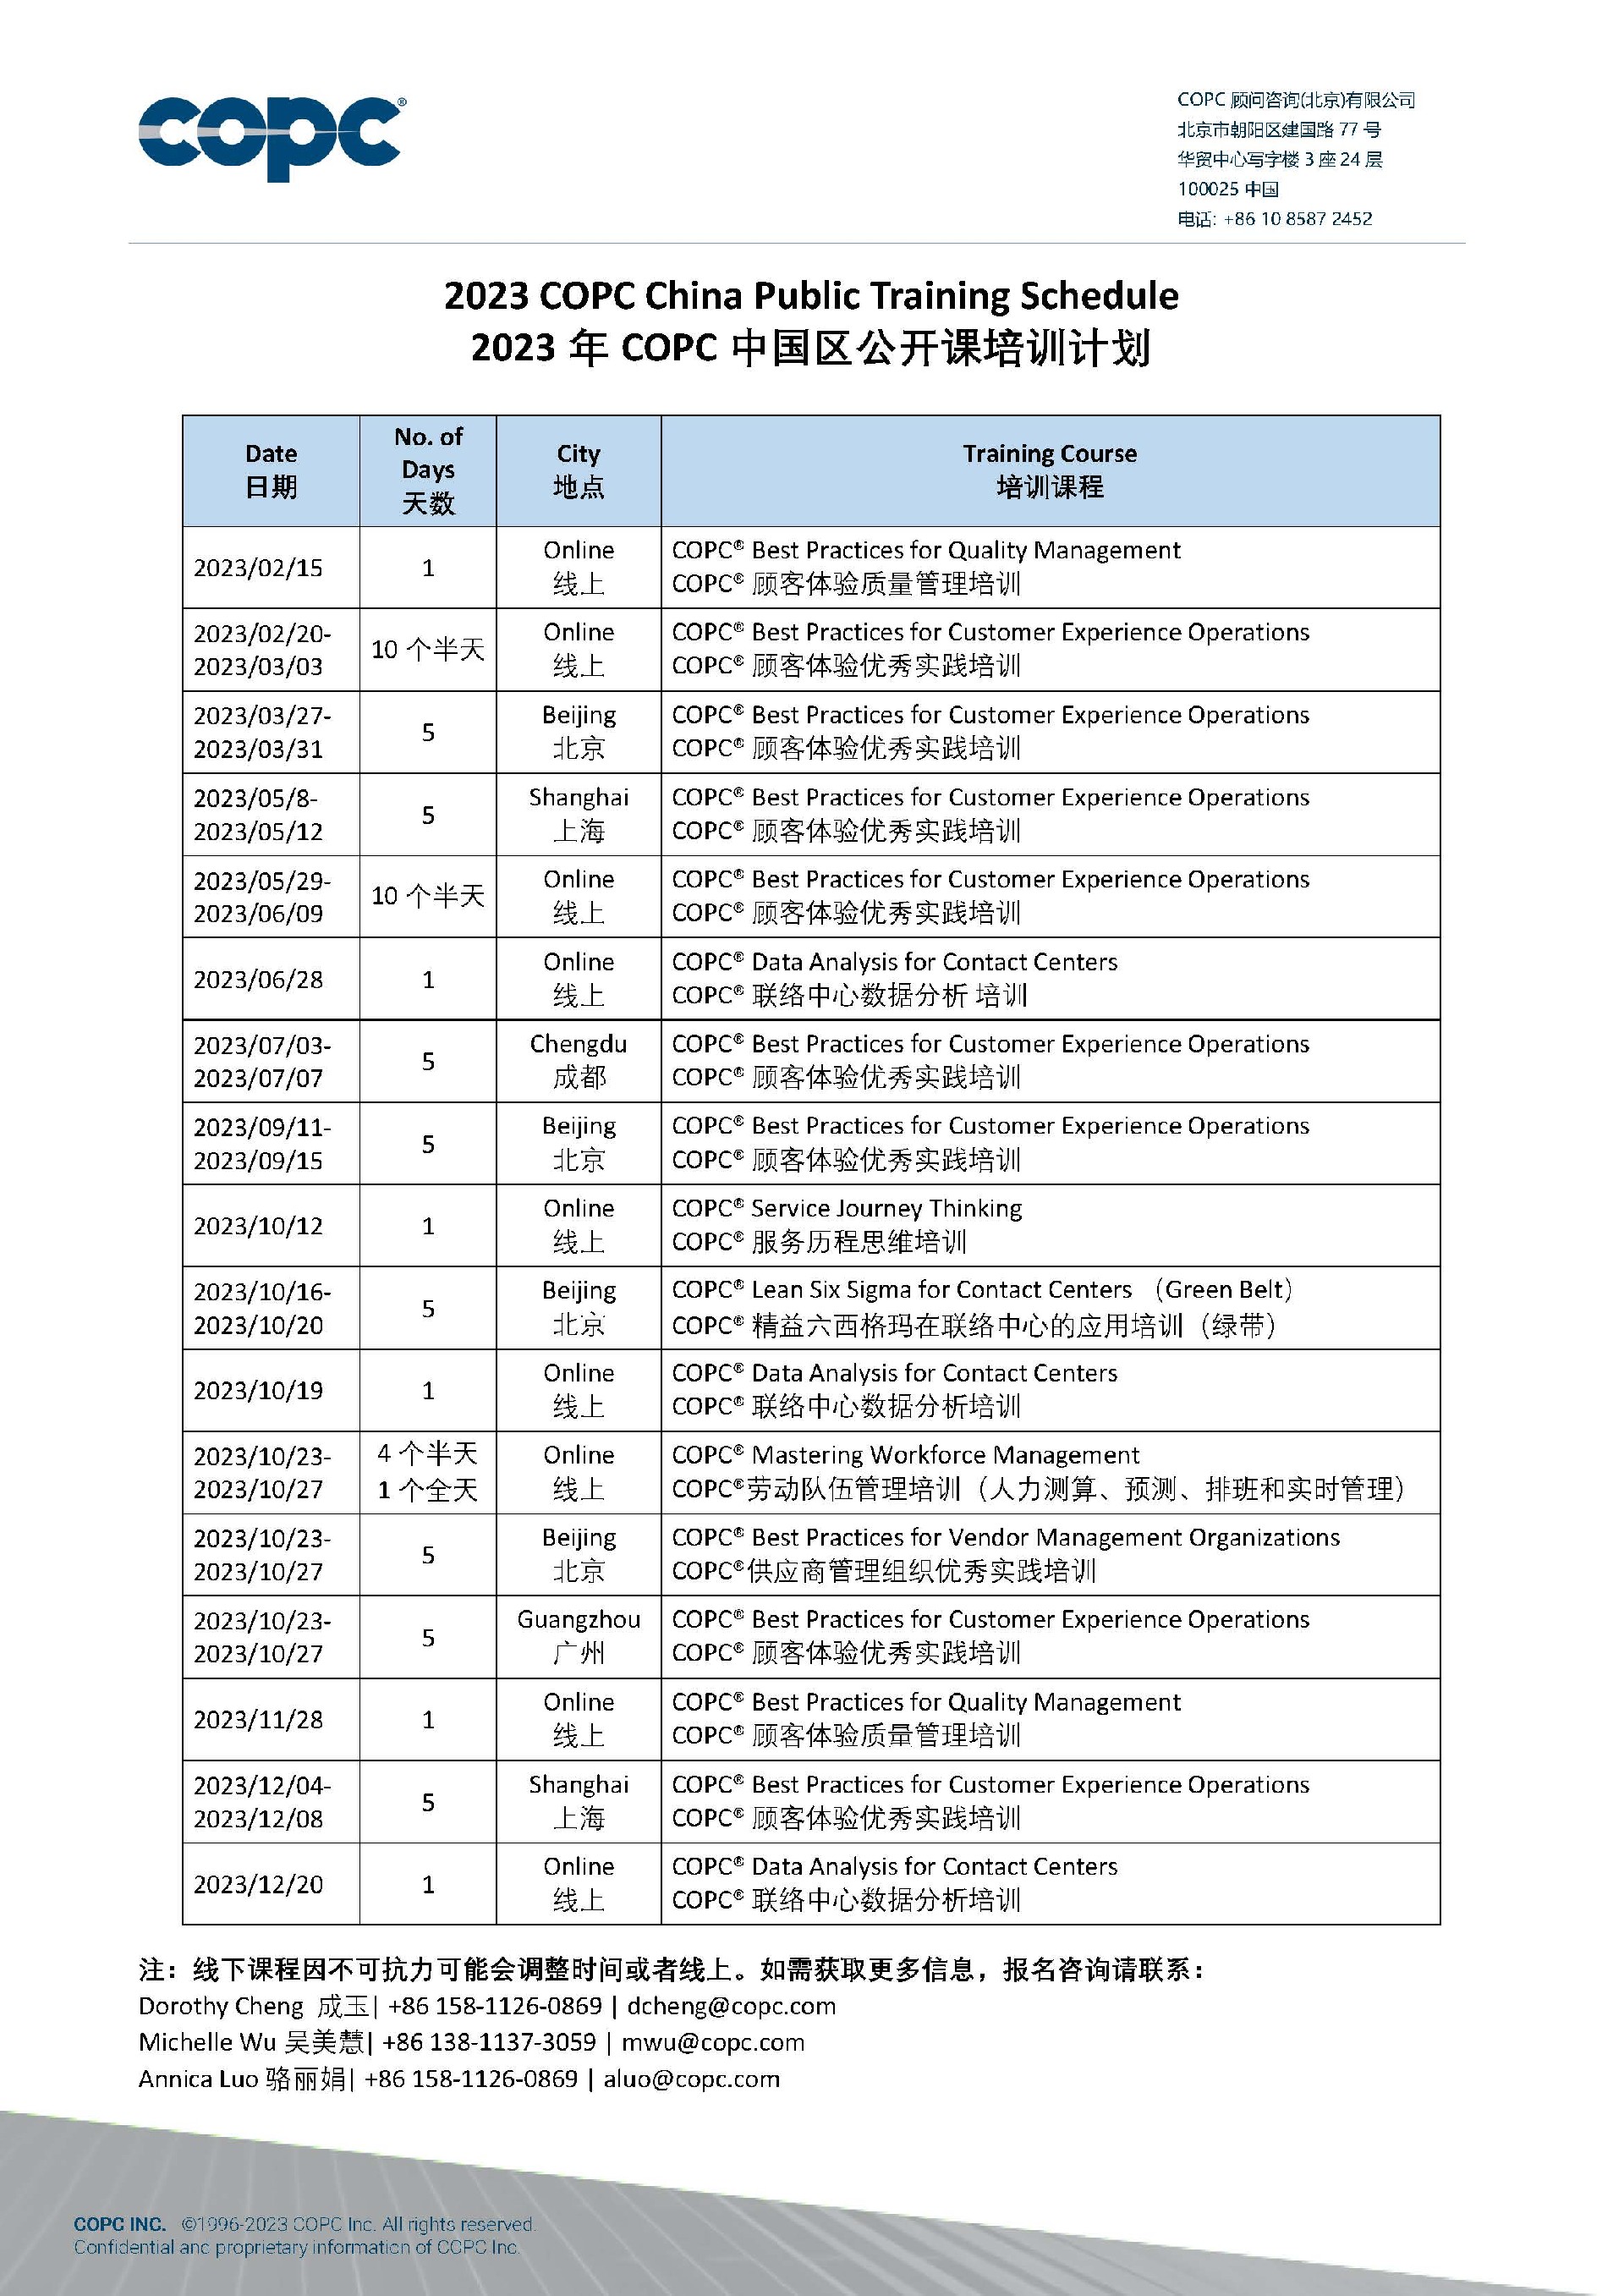 2023年COPC中国区公开课培训计划_090623.jpg